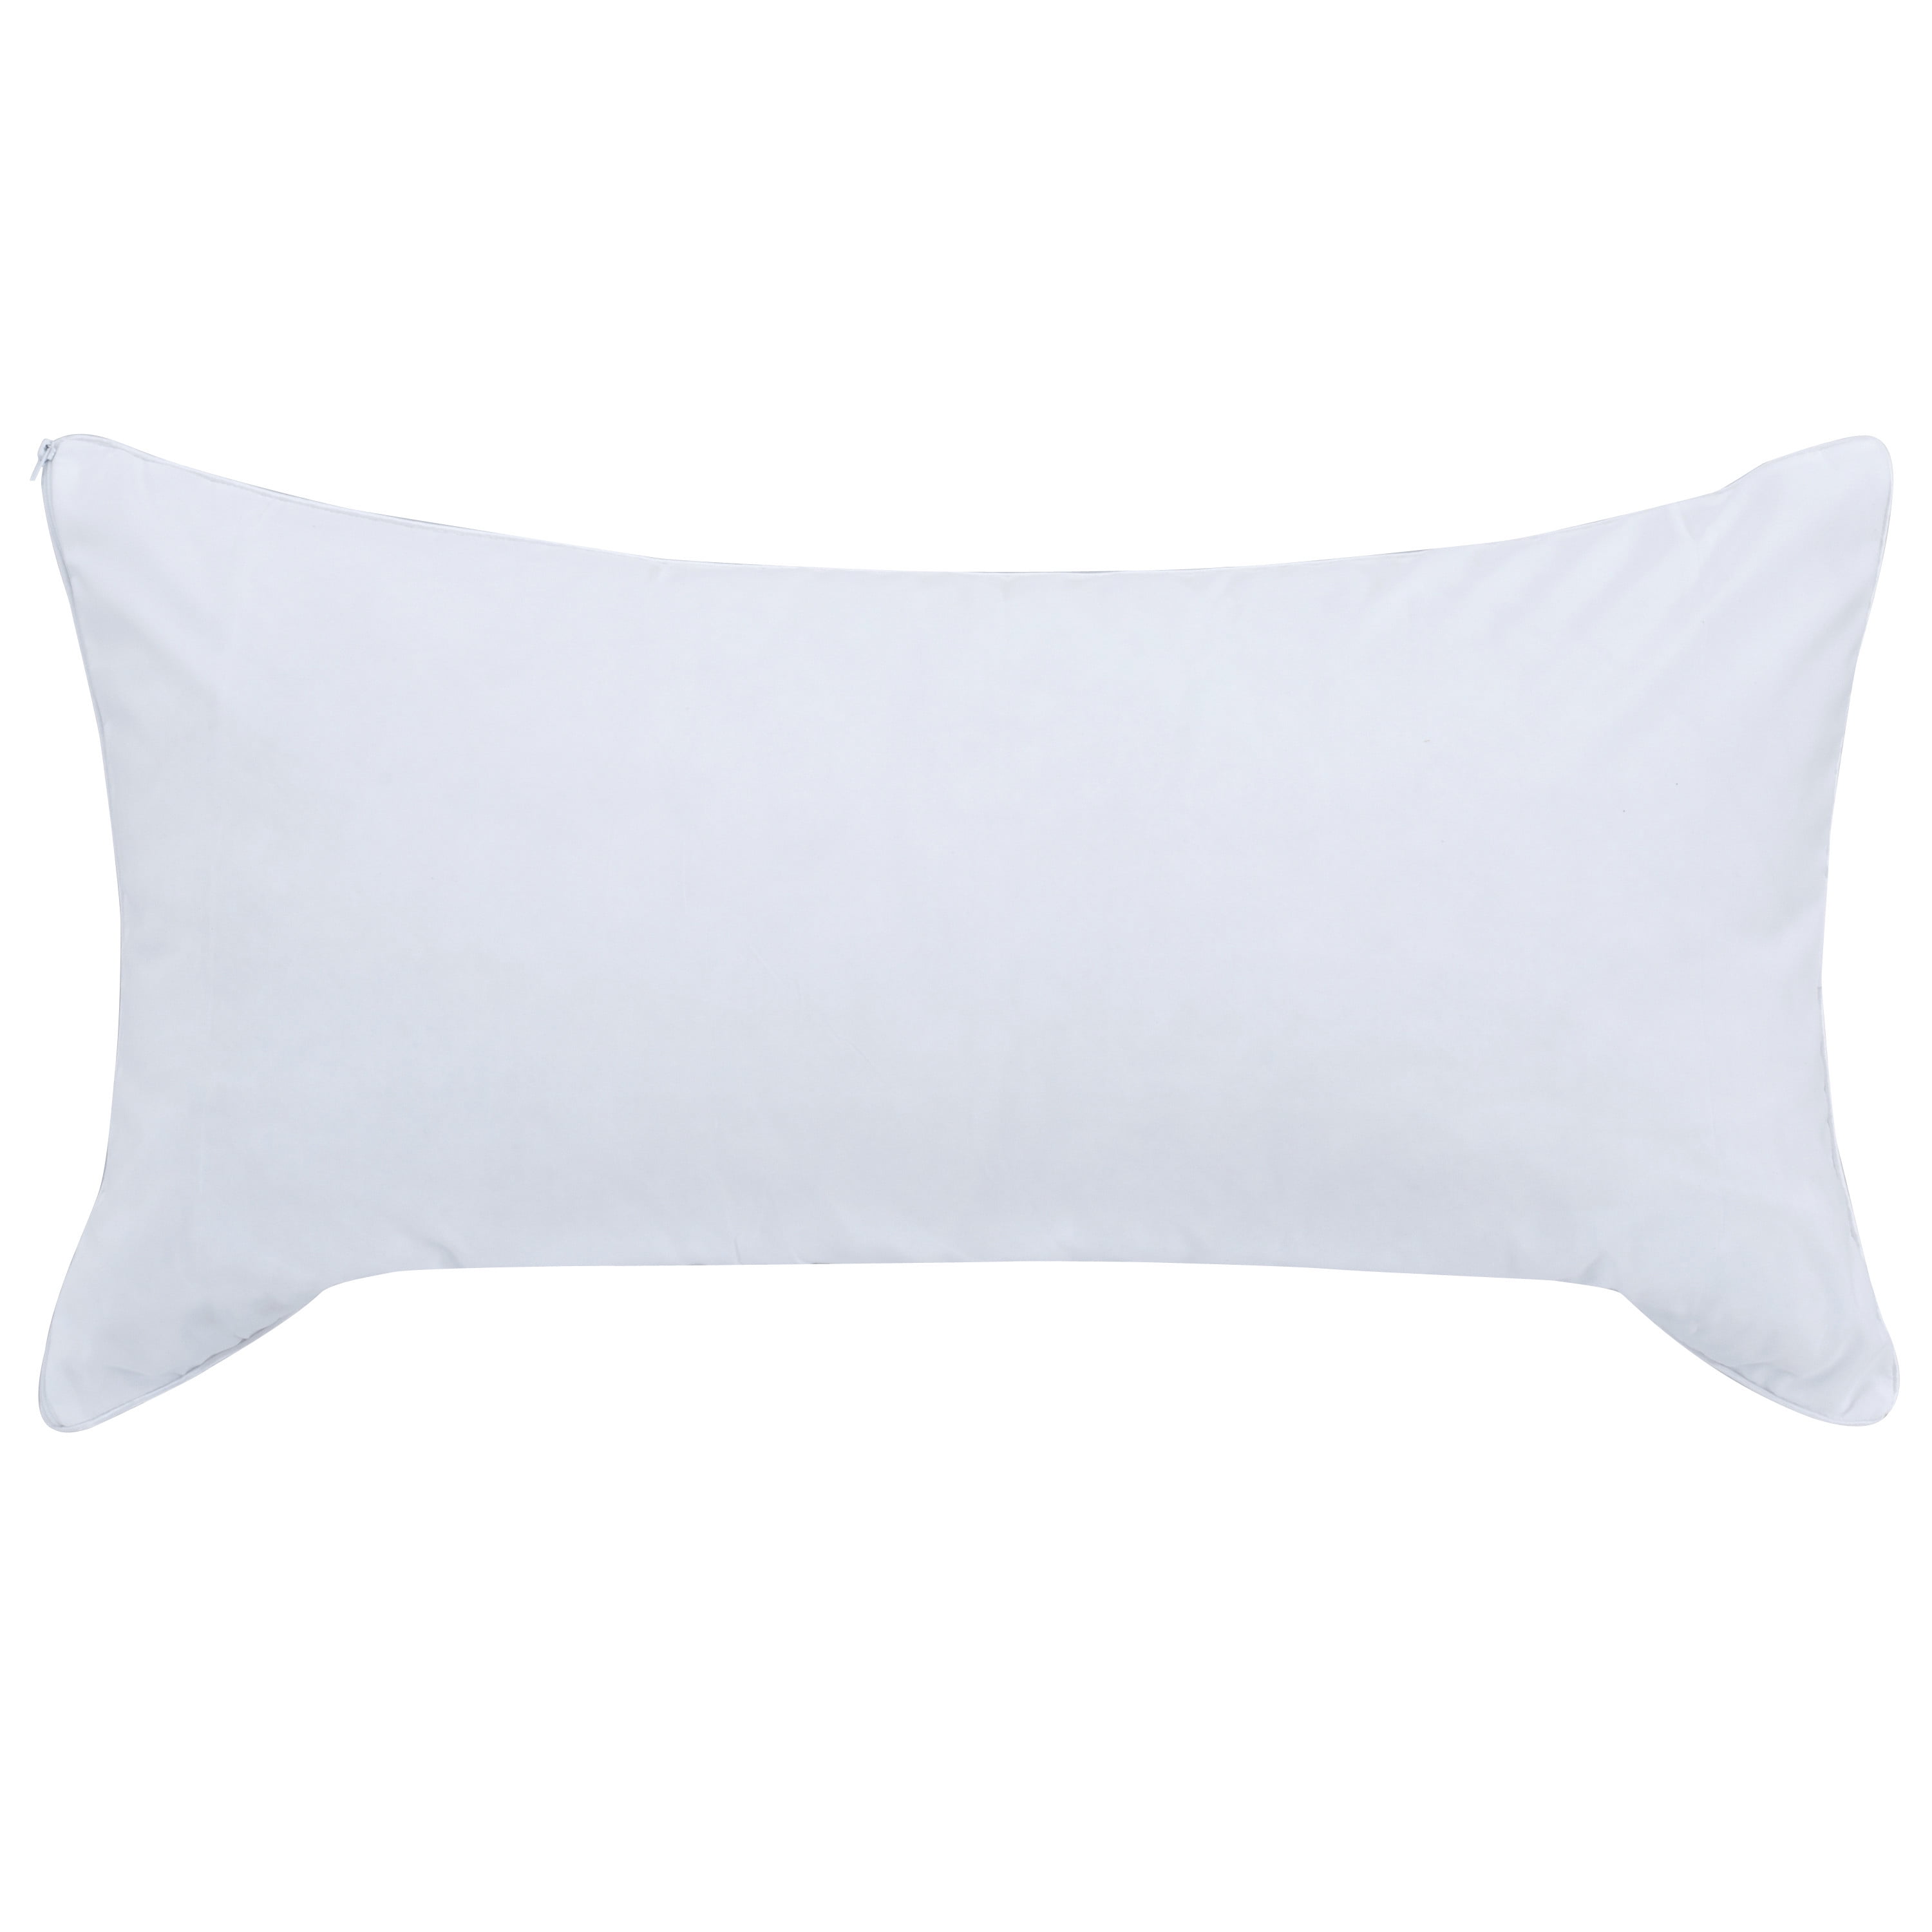 walmart cheap pillows